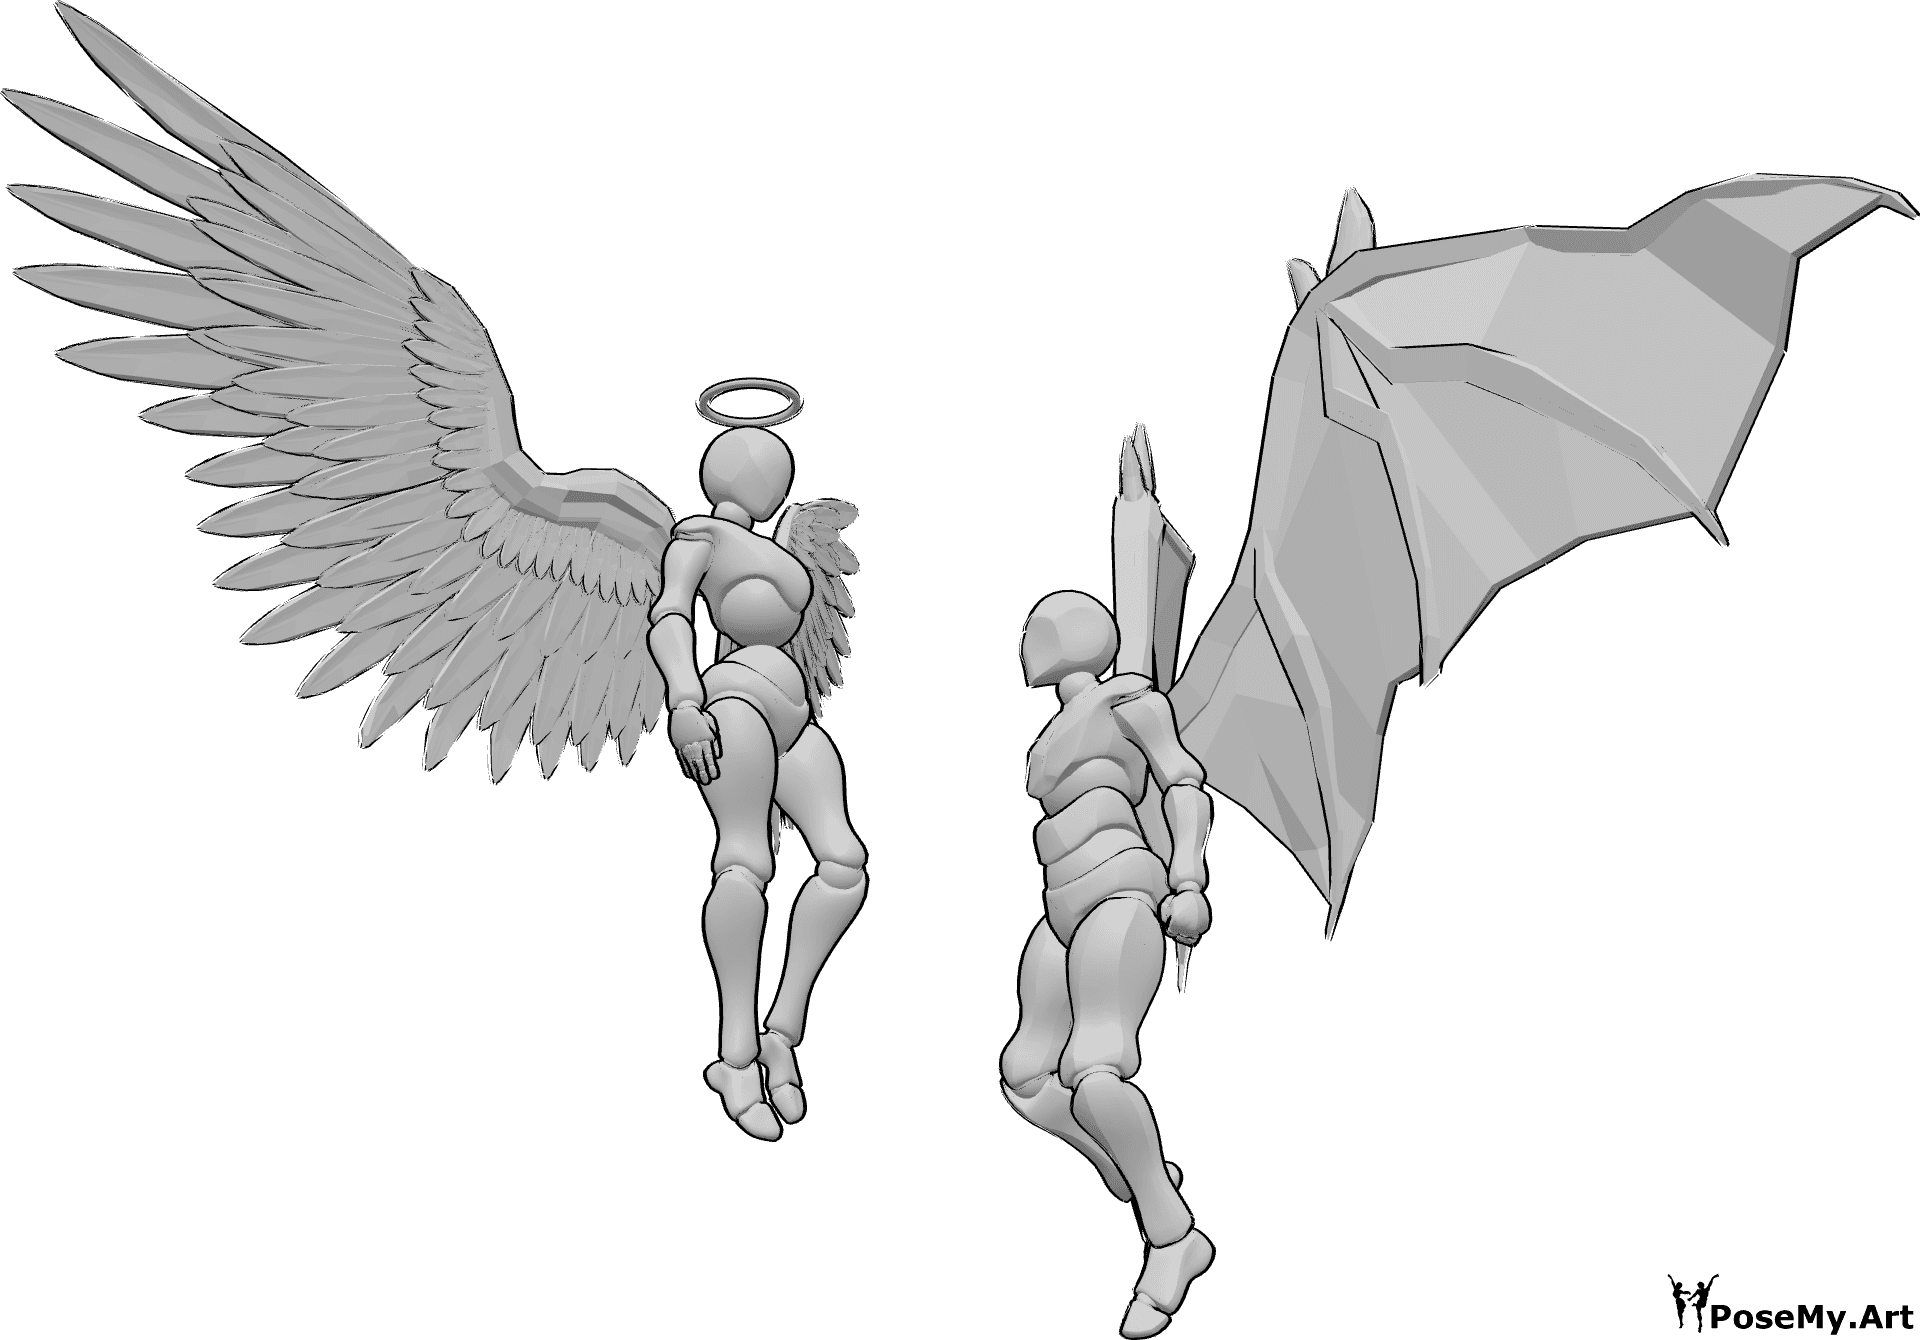 Referencia de poses- Postura de ángel y demonio - El ángel femenino y el demonio masculino flotan en el aire y se miran, el ángel le mira desde arriba, el macho aprieta los puños